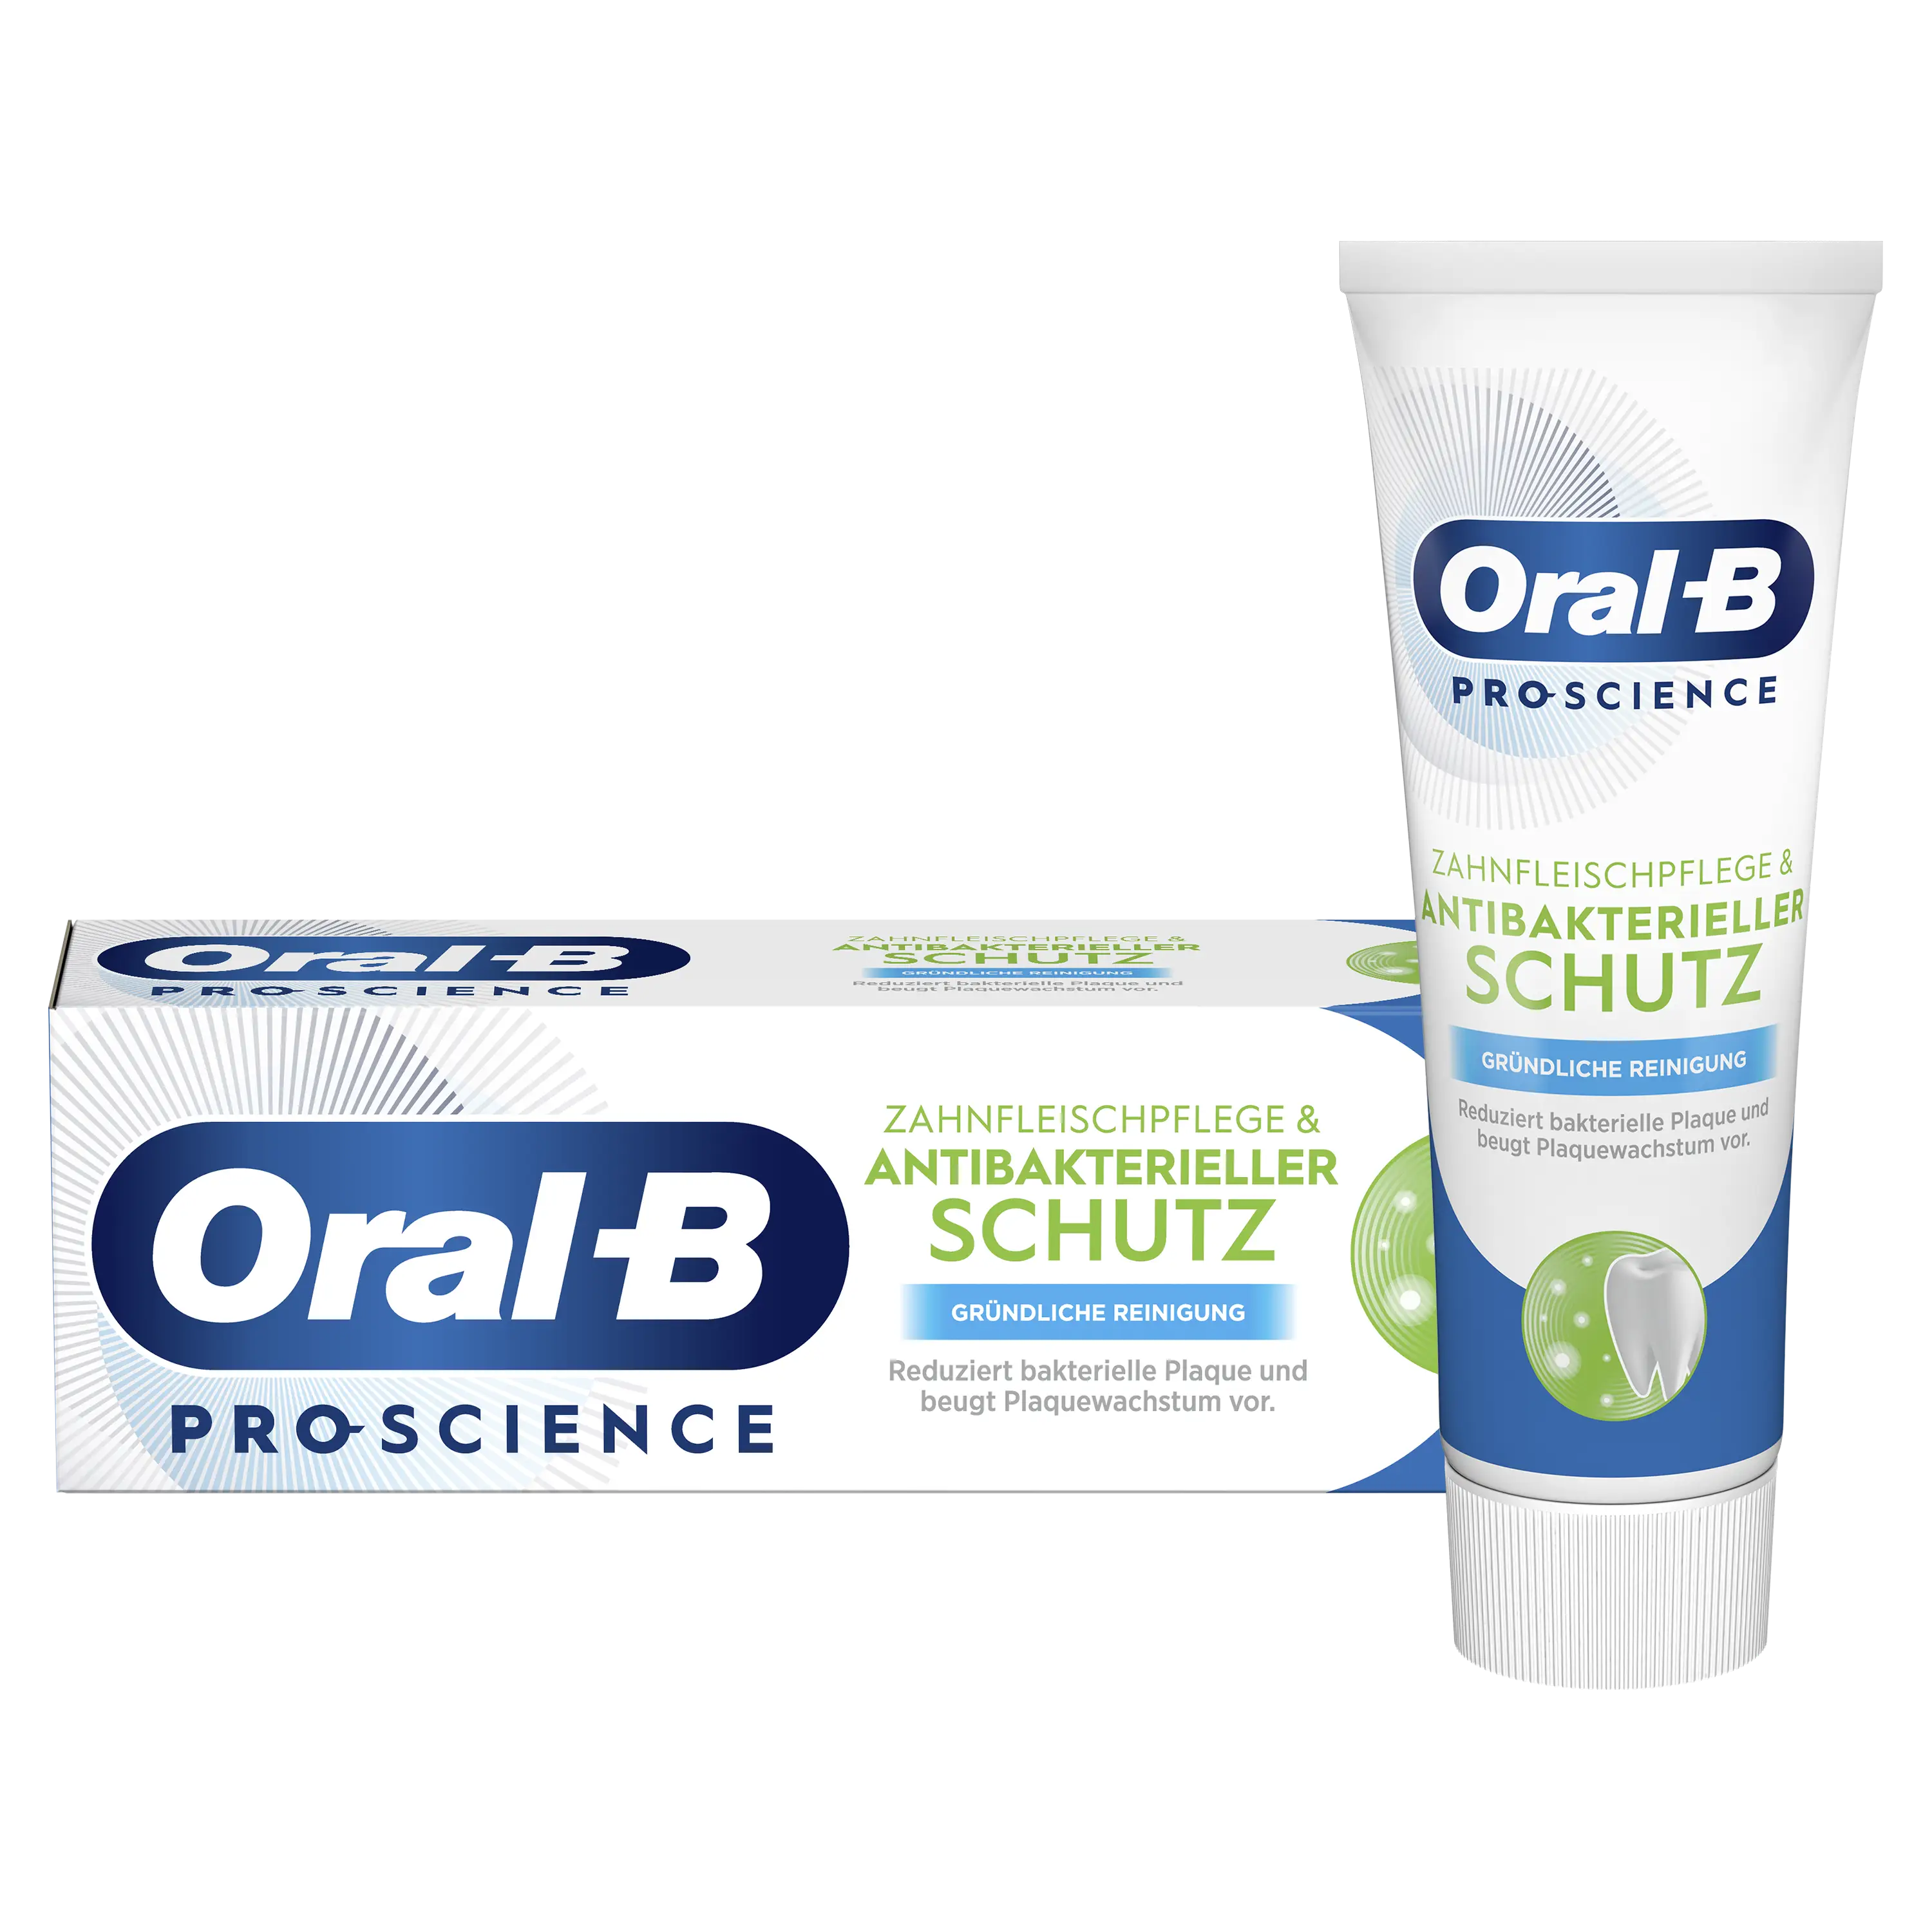 Image - Oral-B Zahnfleischpflege & Antibakterieller Schutz Zahnpasta - Gründliche Reinigung - Main 